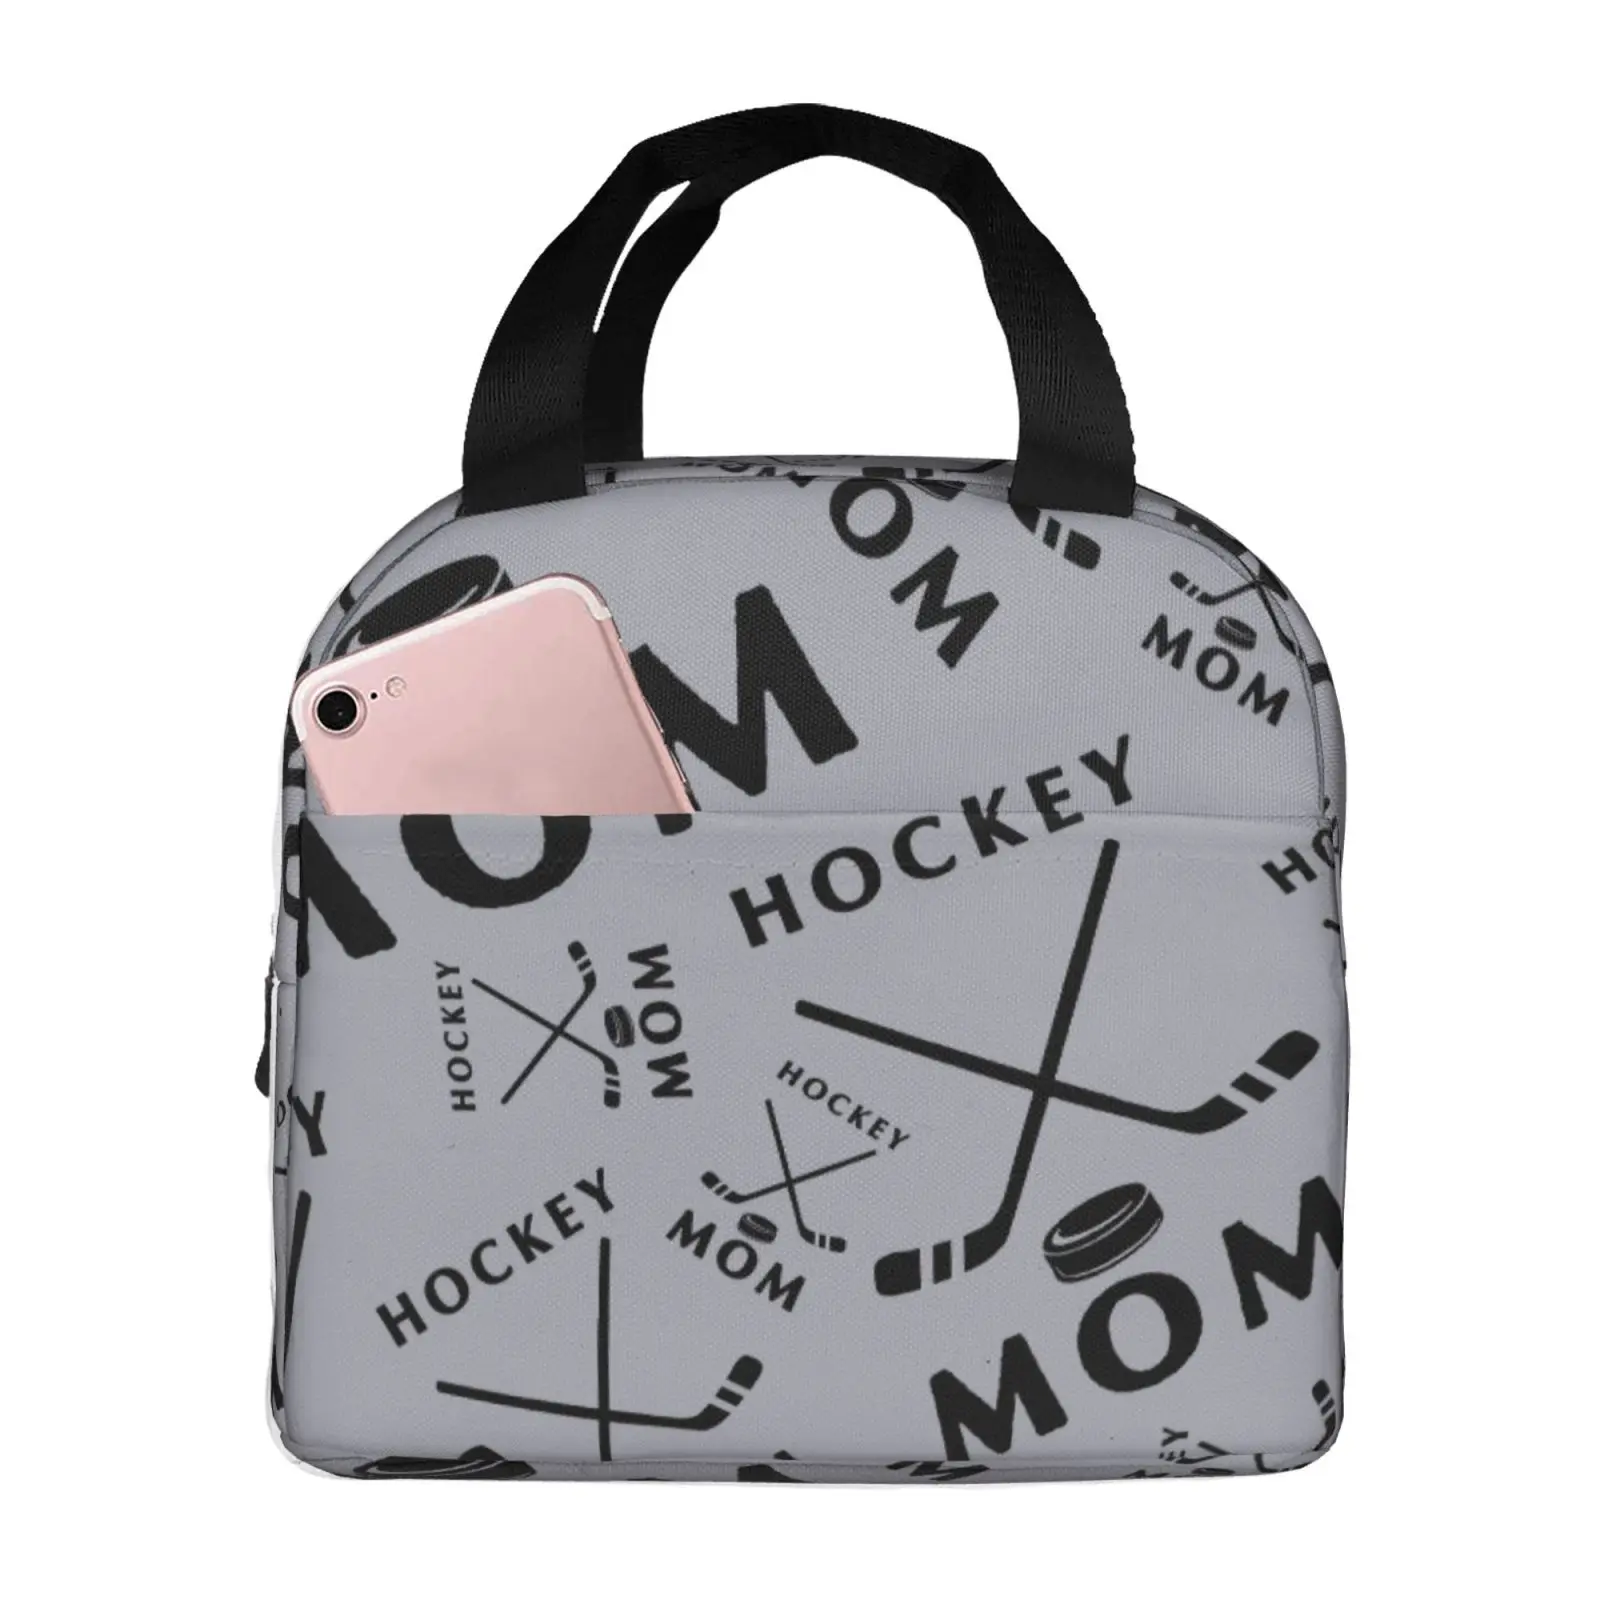 Хоккейная мама женские сумки обед сумка многоразовый изолированный Бенто коробка тепловой обед на работу пикников сумки для женщин